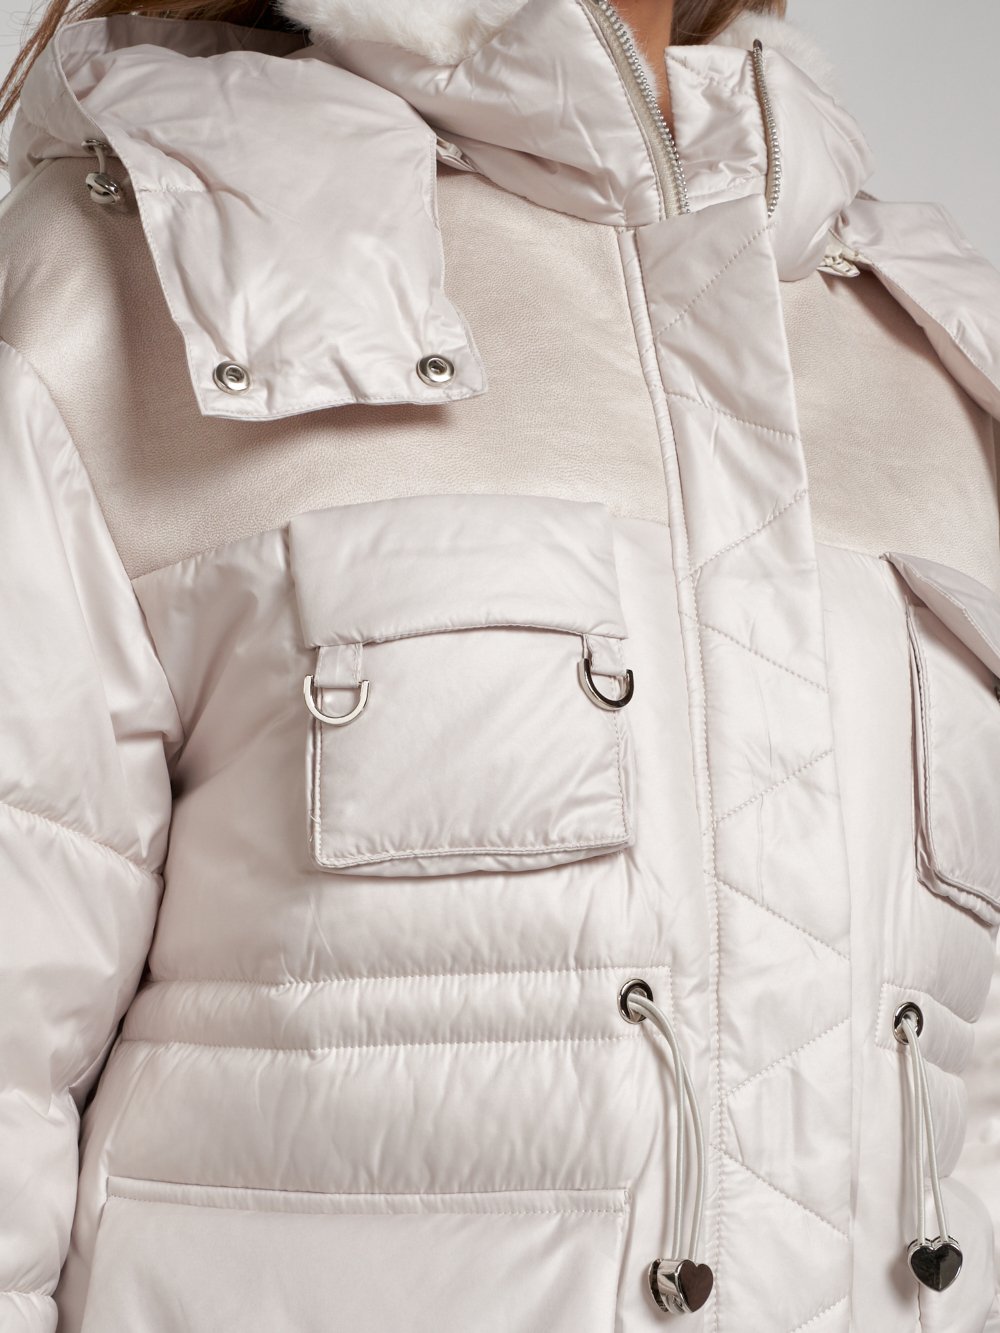 Купить куртку женскую зимнюю оптом от производителя недорого в Москве 13338B 1